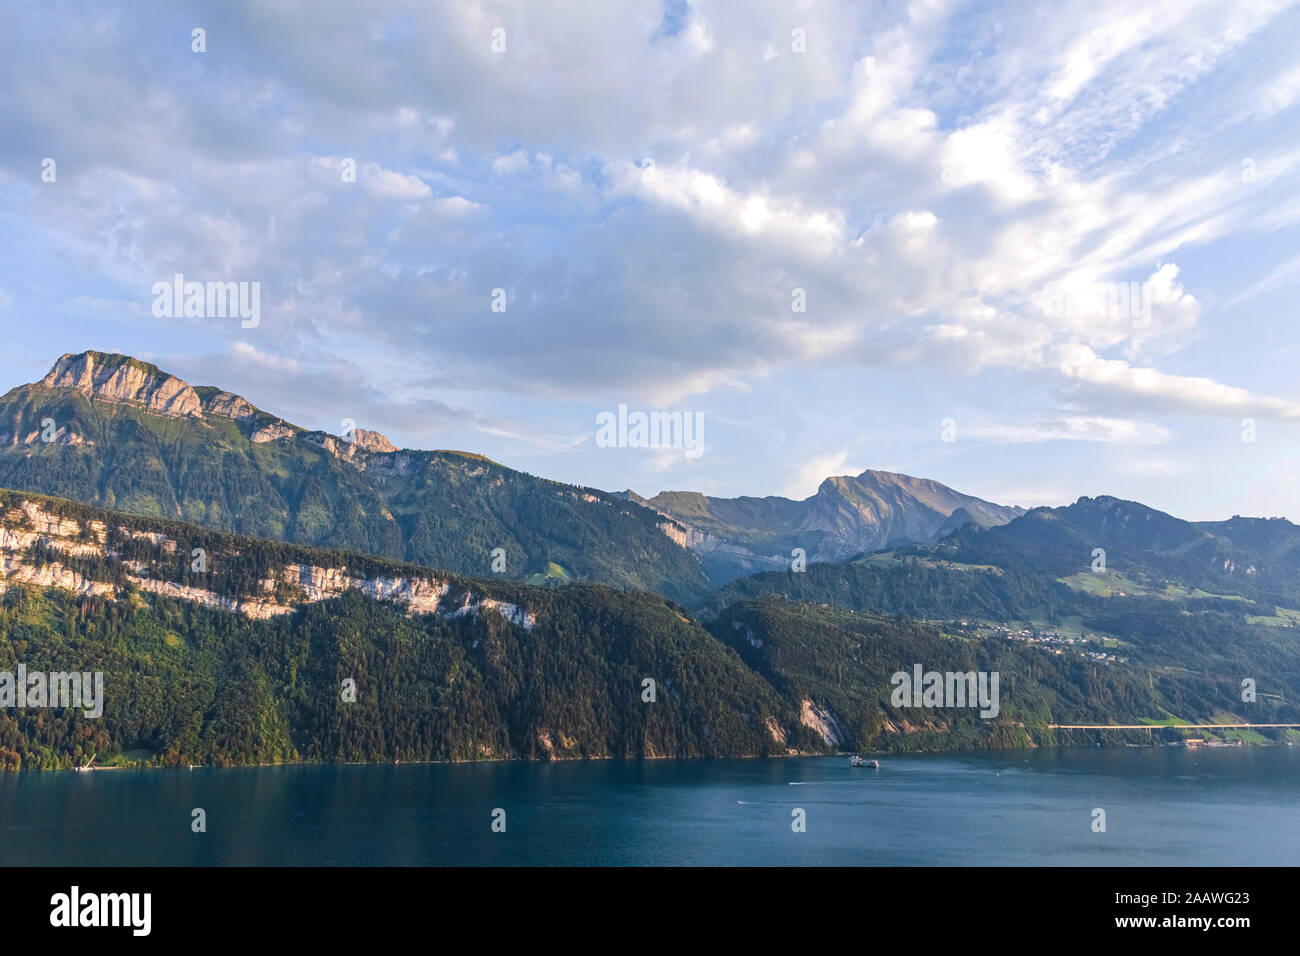 La Suisse, Lucerne, Schwyz, vue panoramique de nuages sur le lac de Lucerne et de haute falaises boisées en été Banque D'Images